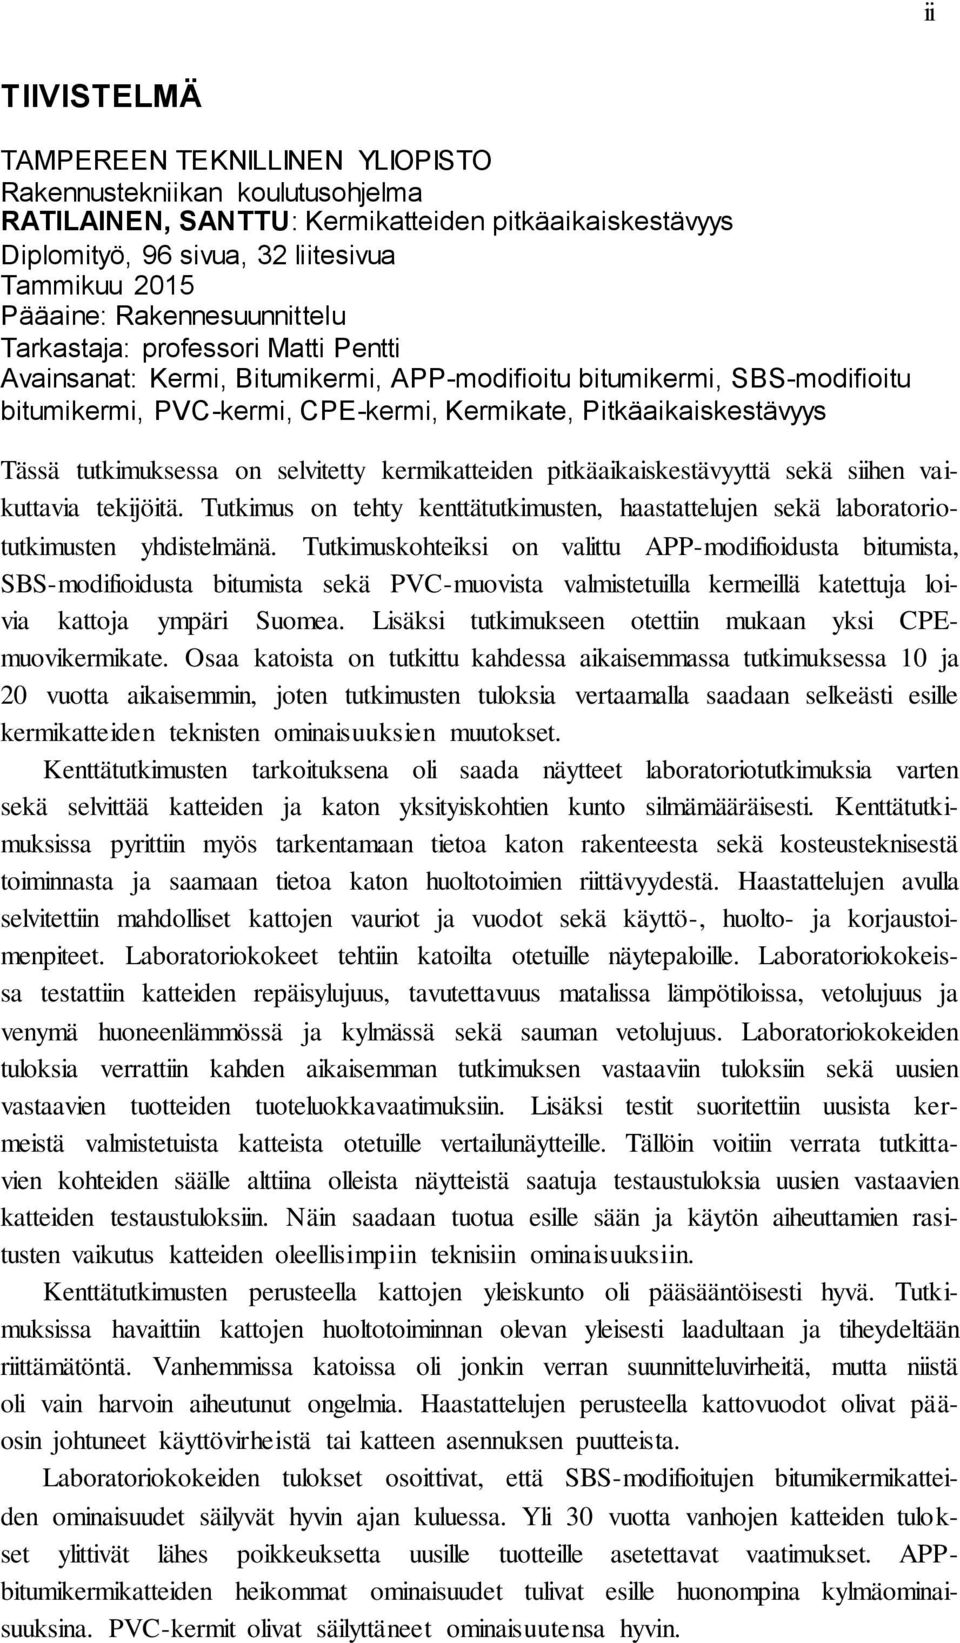 SANTTU RATILAINEN KERMIKATTEIDEN PITKÄAIKAISKESTÄVYYS - PDF Ilmainen lataus